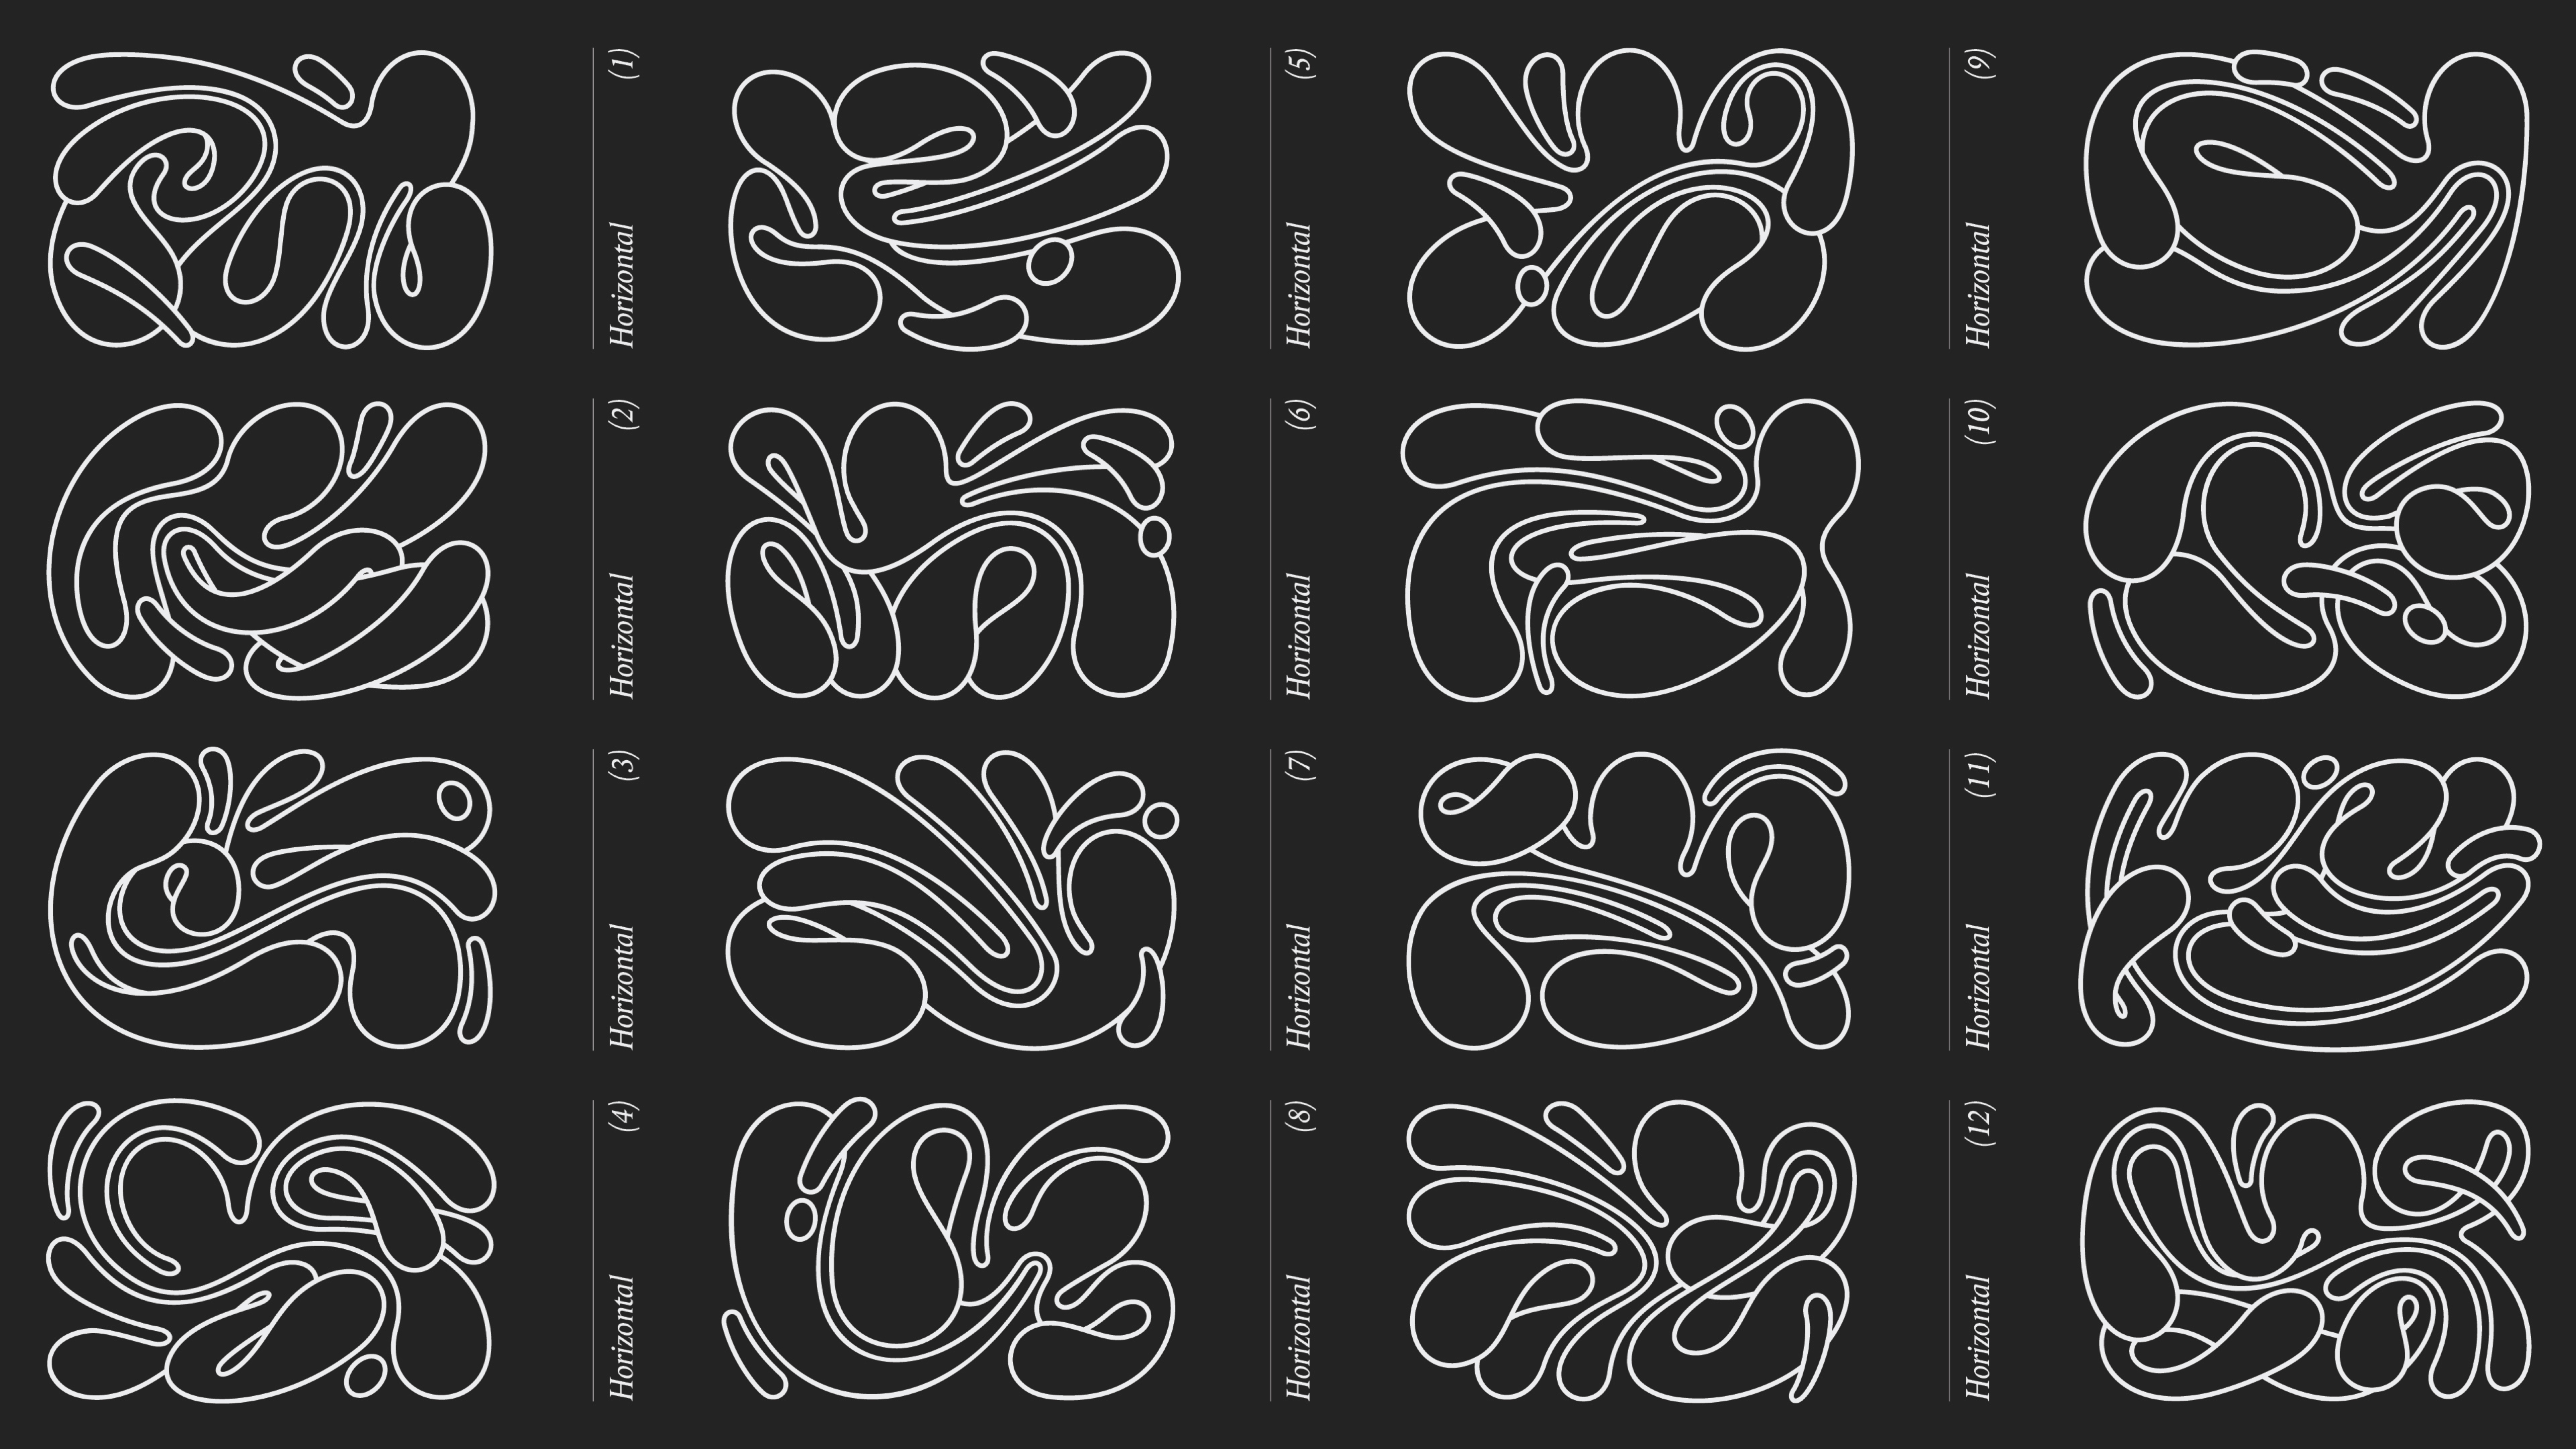 Alternate octopus logos